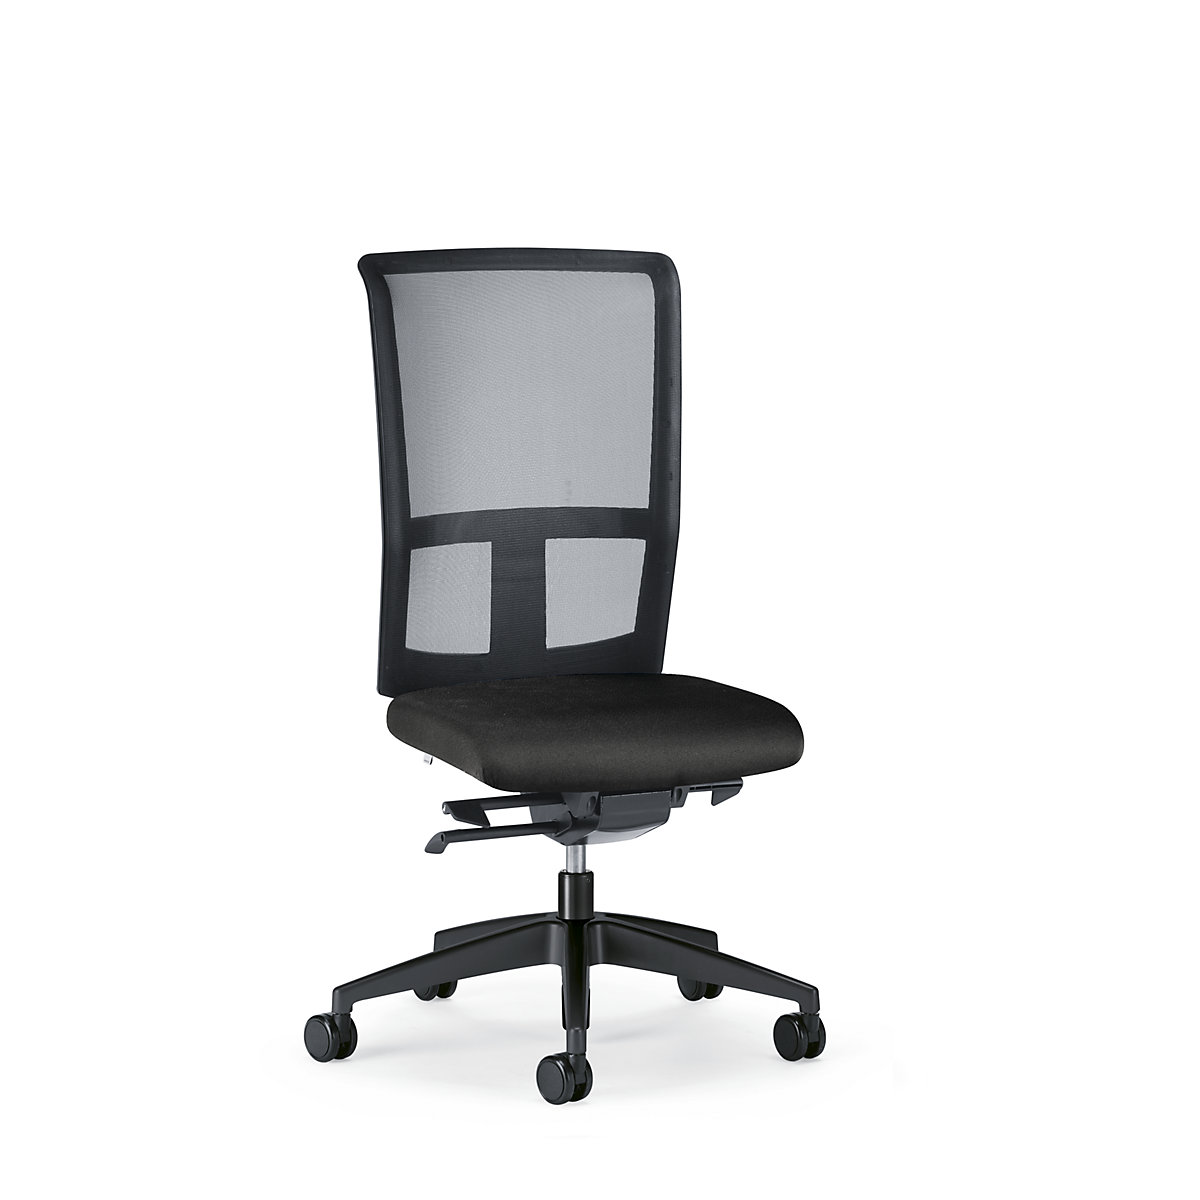 GOAL AIR office swivel chair, back rest height 545 mm - interstuhl